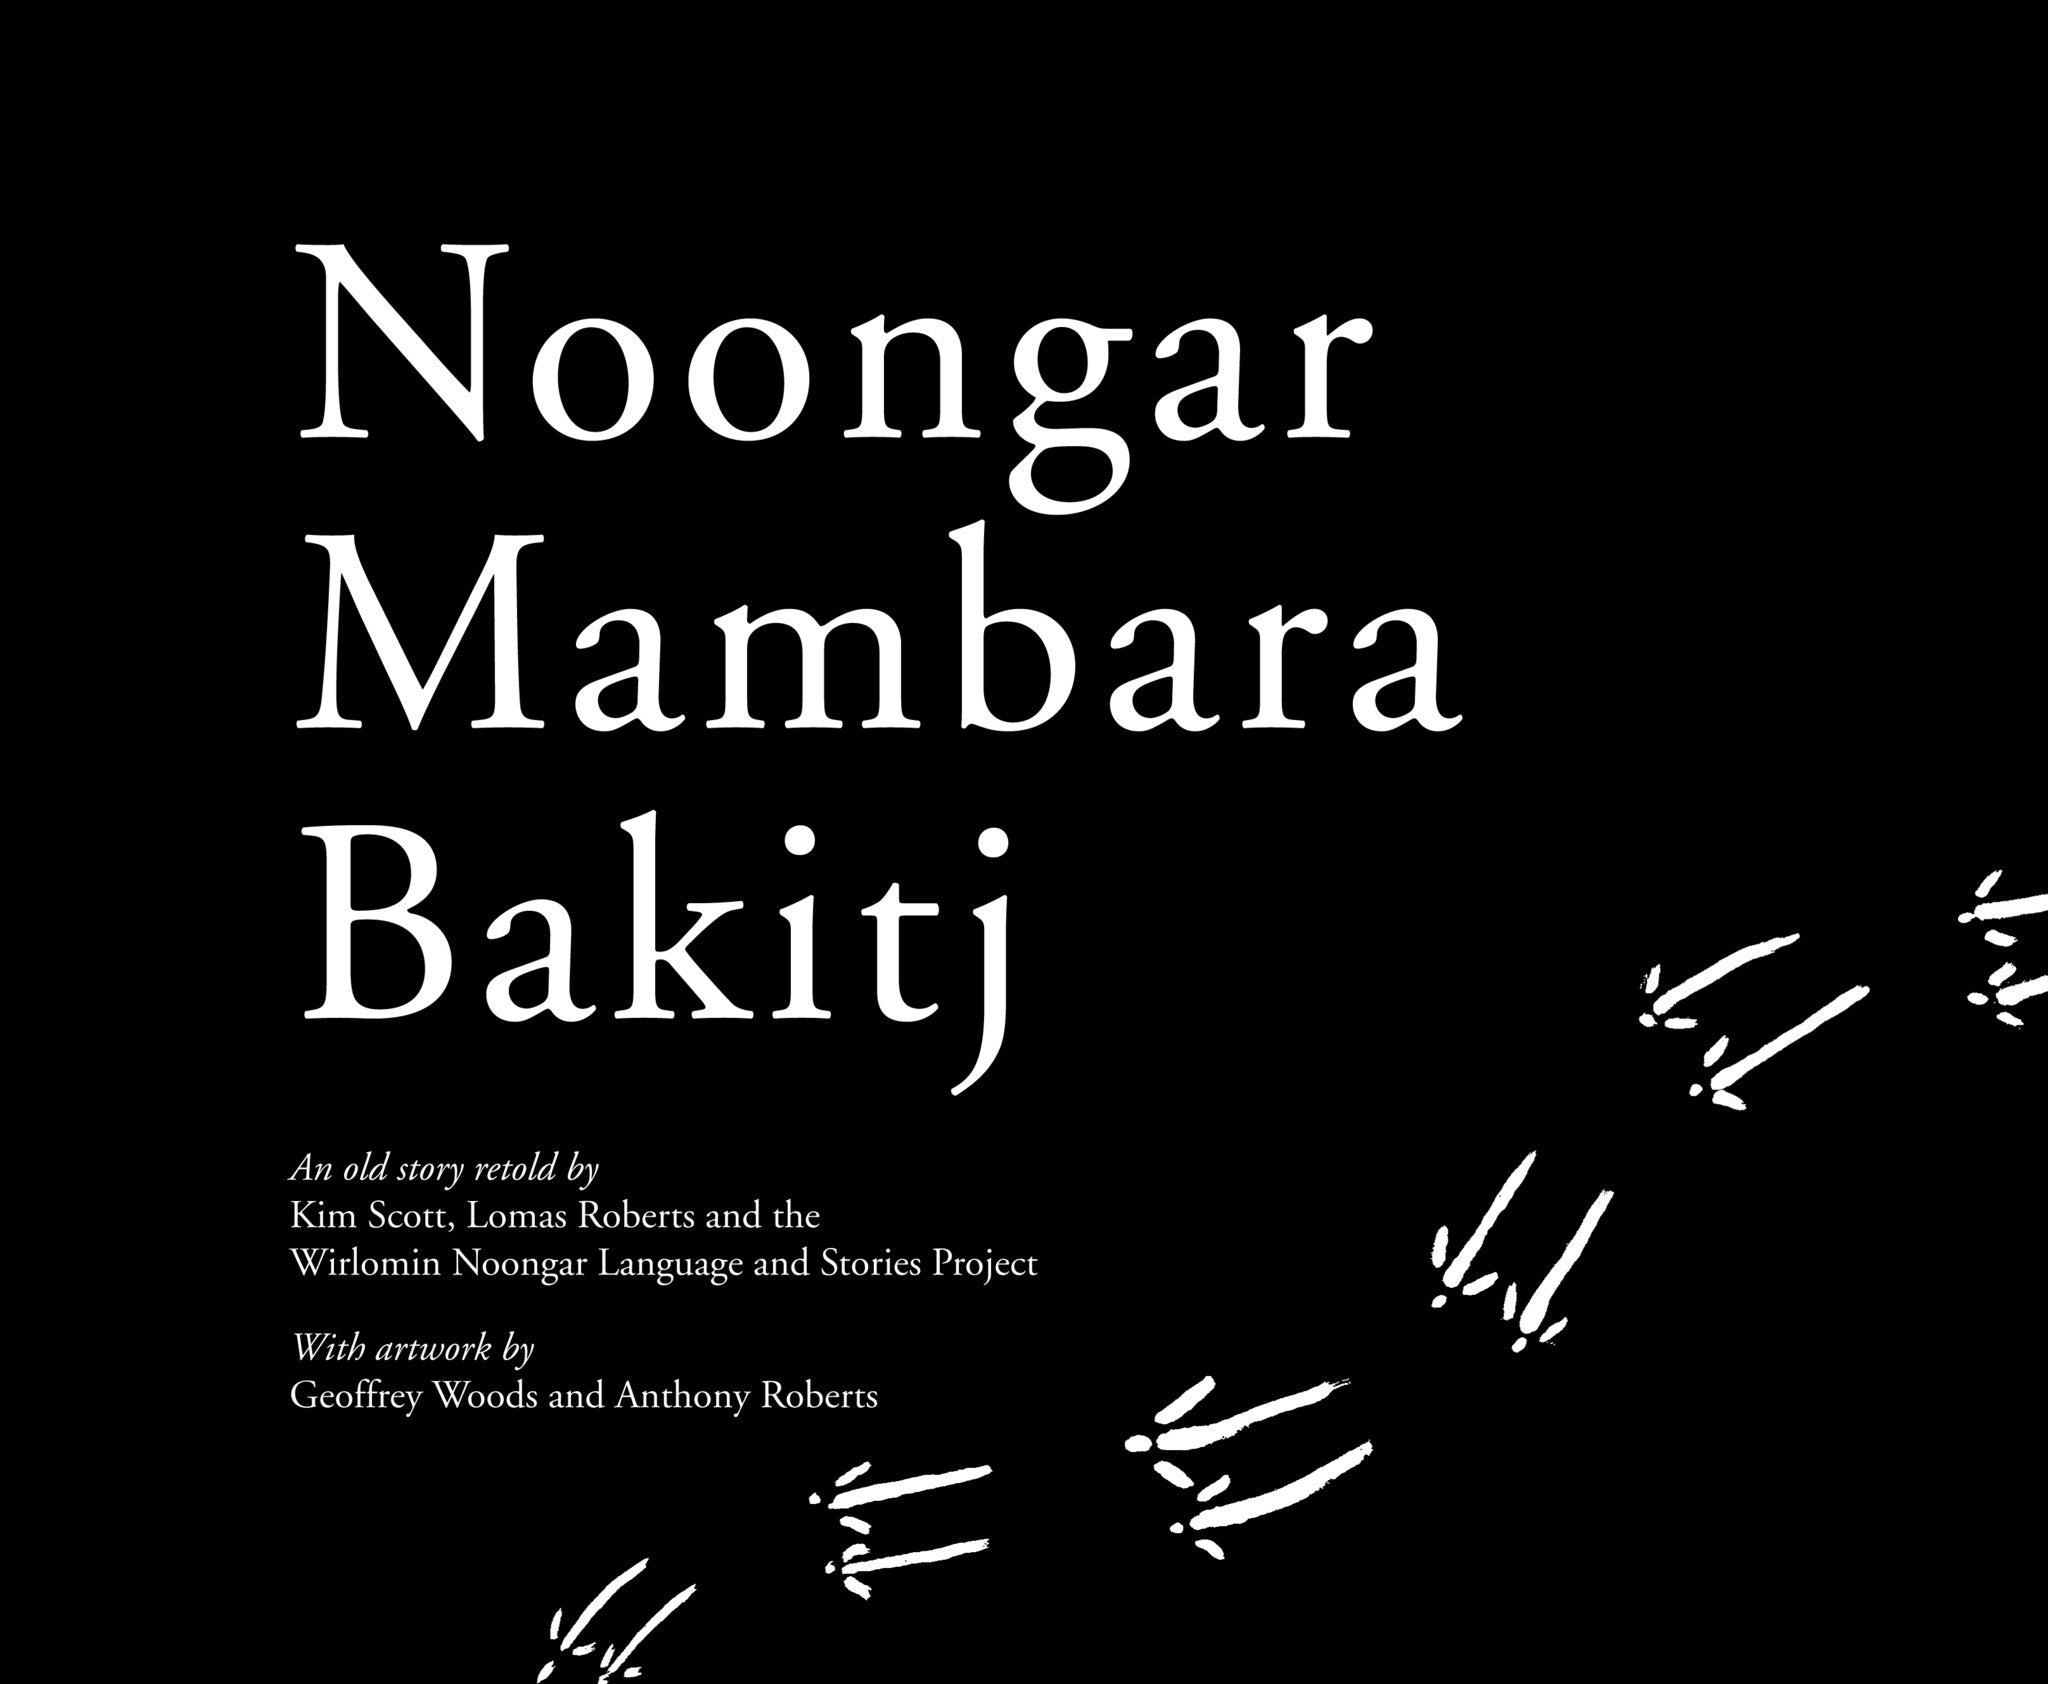 Noongar Mambara Bakitj